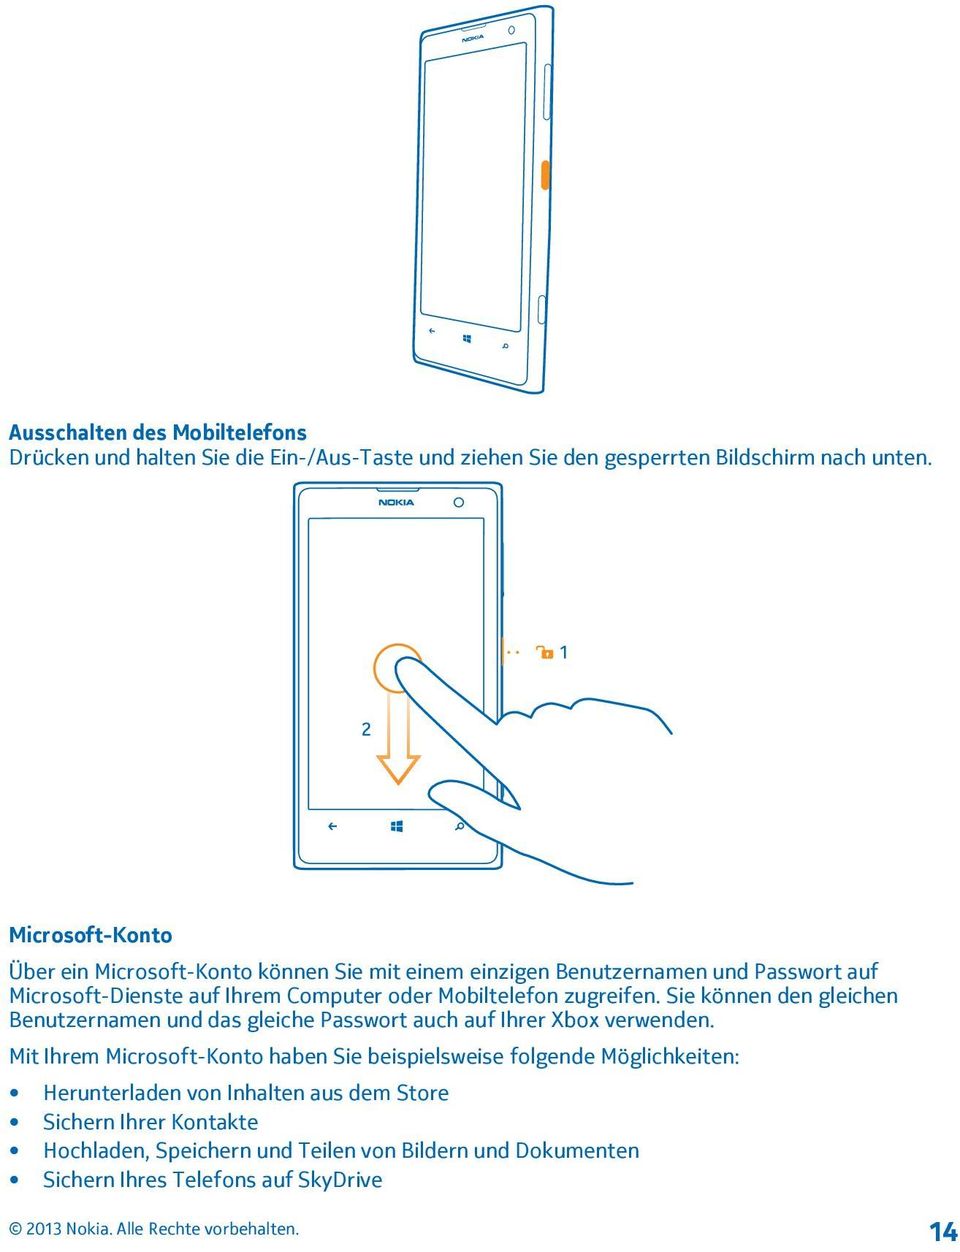 Mobiltelefon zugreifen. Sie können den gleichen Benutzernamen und das gleiche Passwort auch auf Ihrer Xbox verwenden.